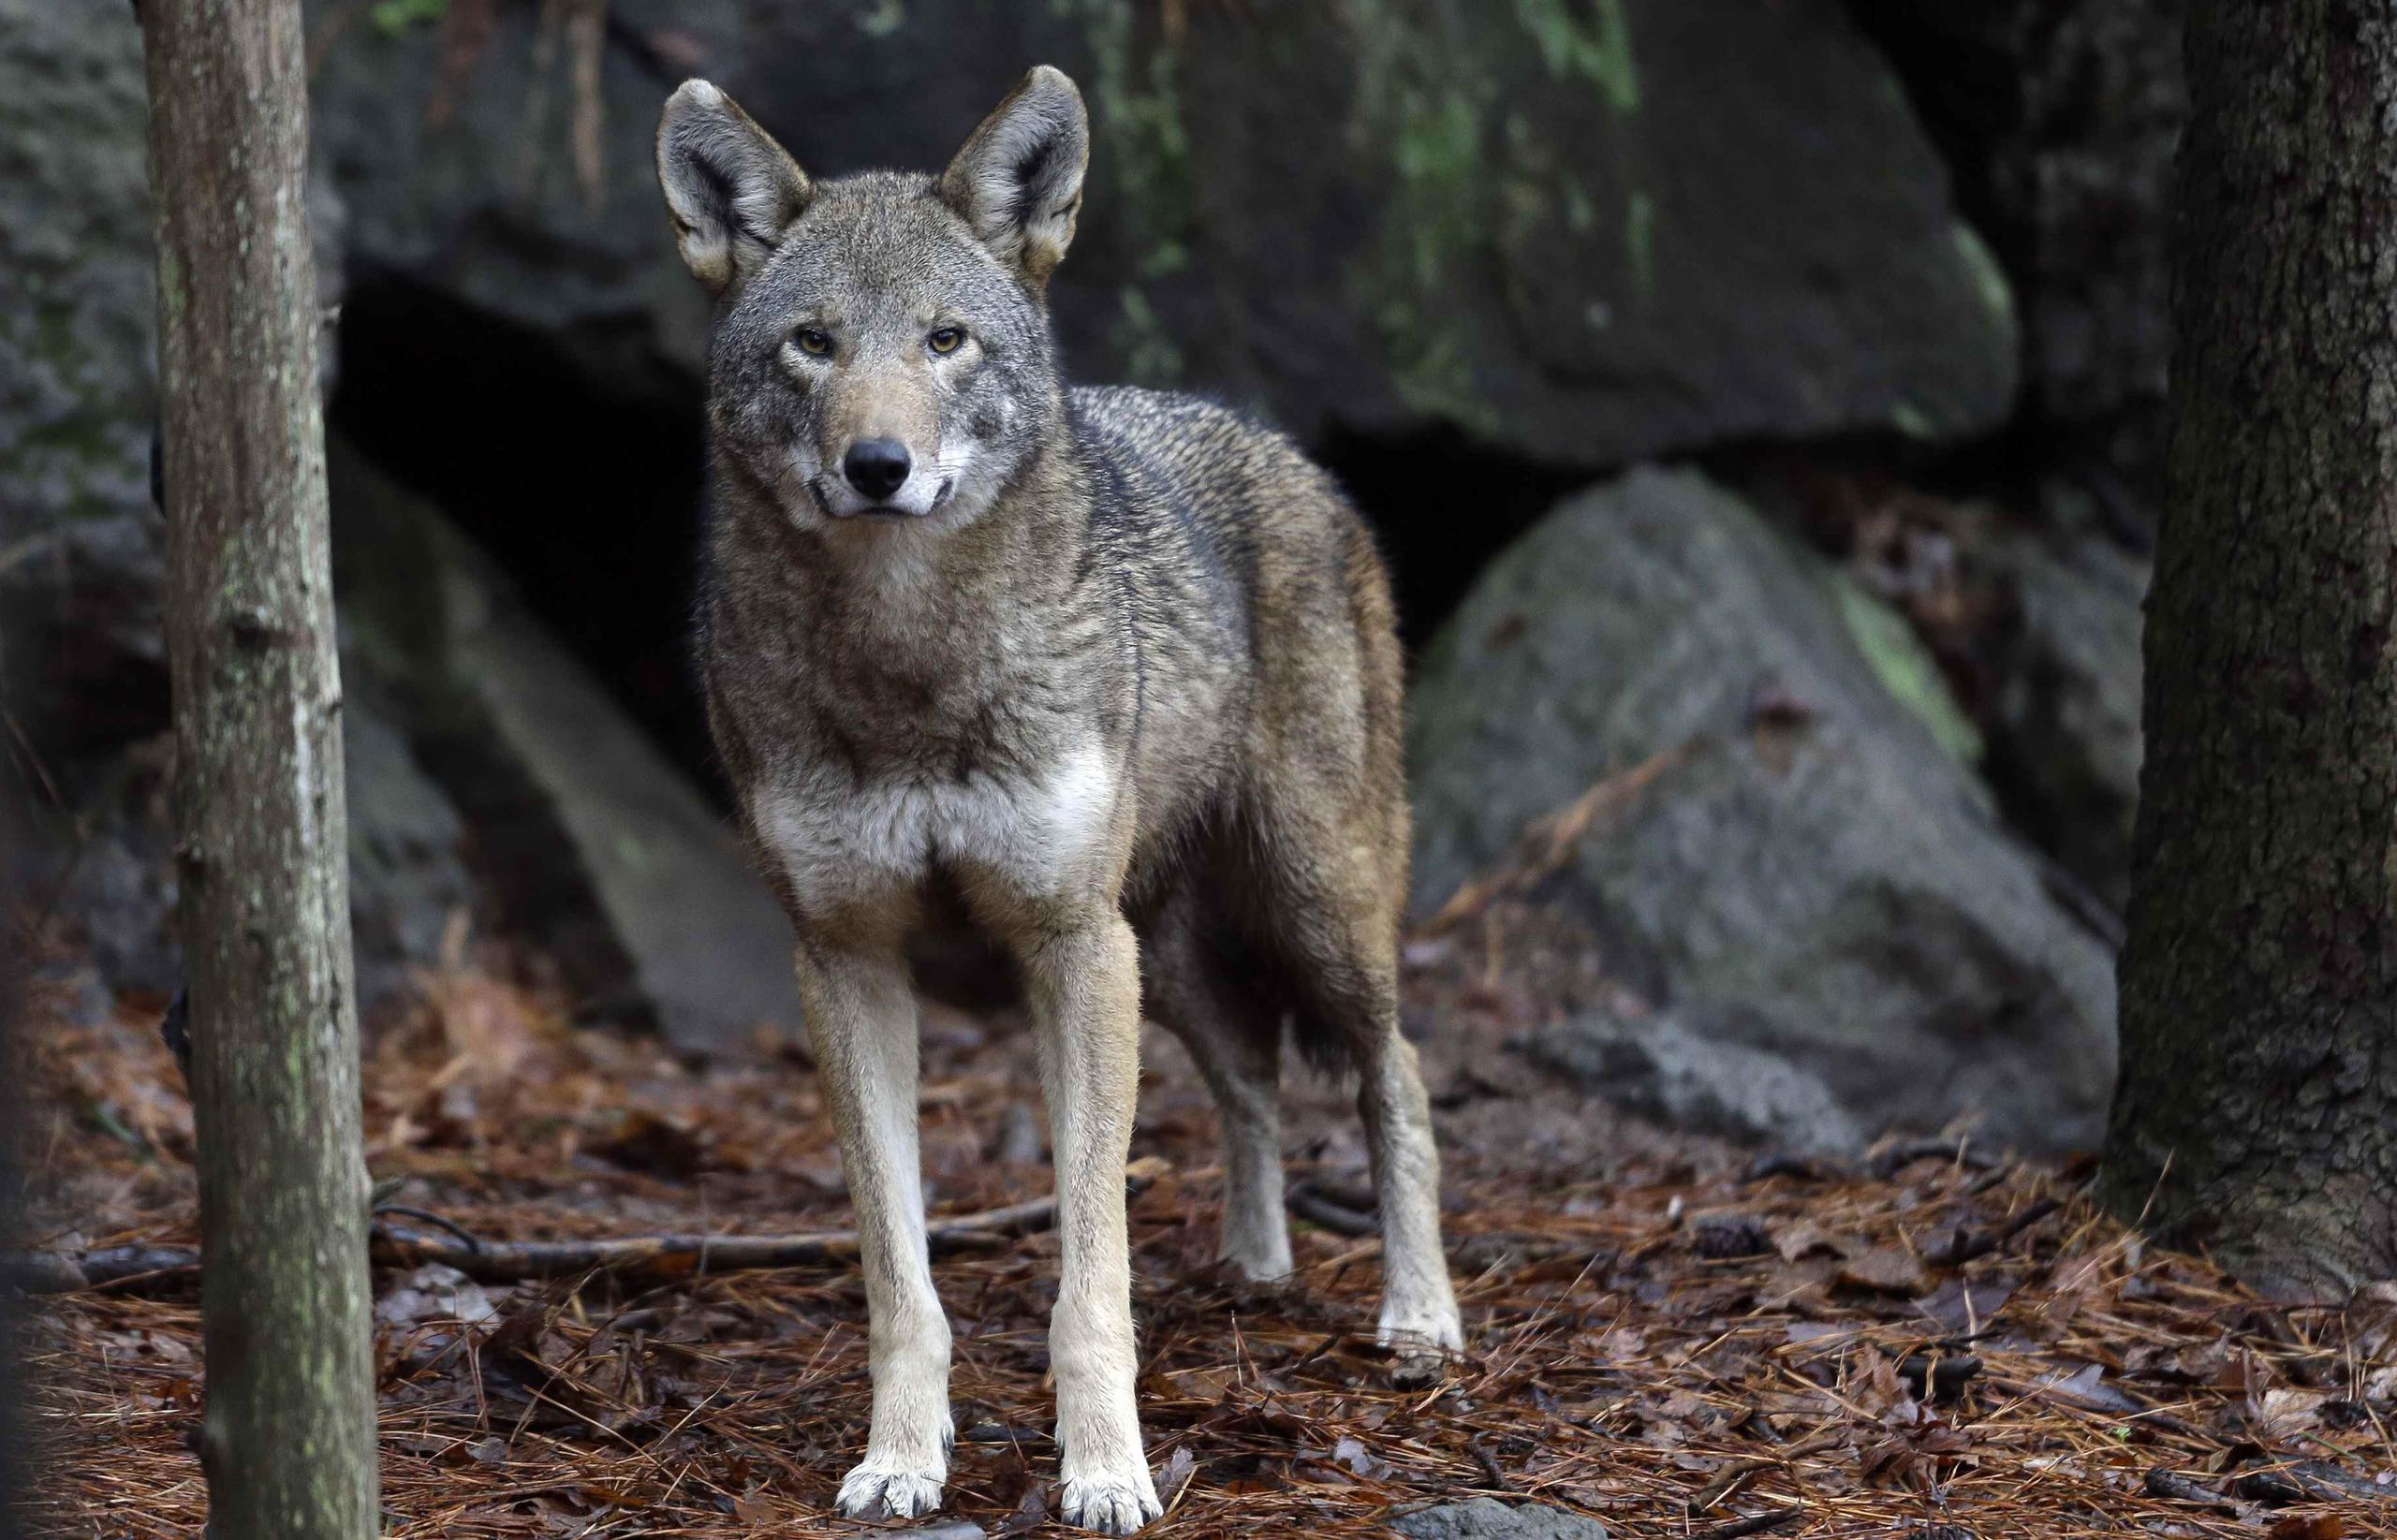 Los activistas desean impedir lo que califican de maneras perjudiciales de sacar a los lobos de terrenos privados. (Archivo/AP)